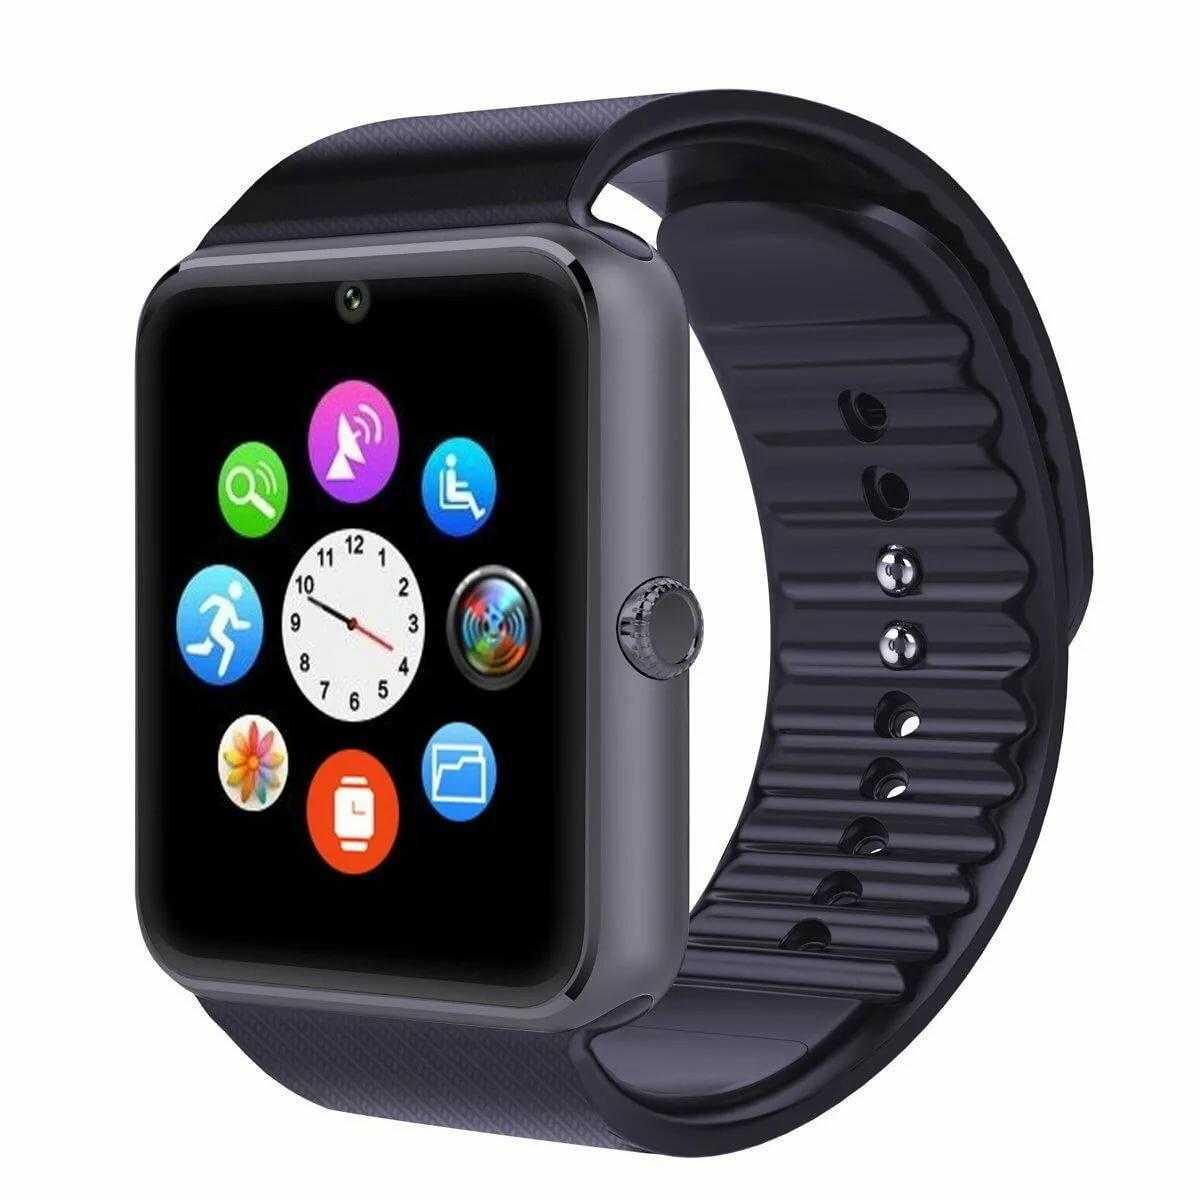 Дизайн и функциональные возможности умных часов из Китая Smart Watch SW007 Основные технические характеристики, комплект поставки, цена